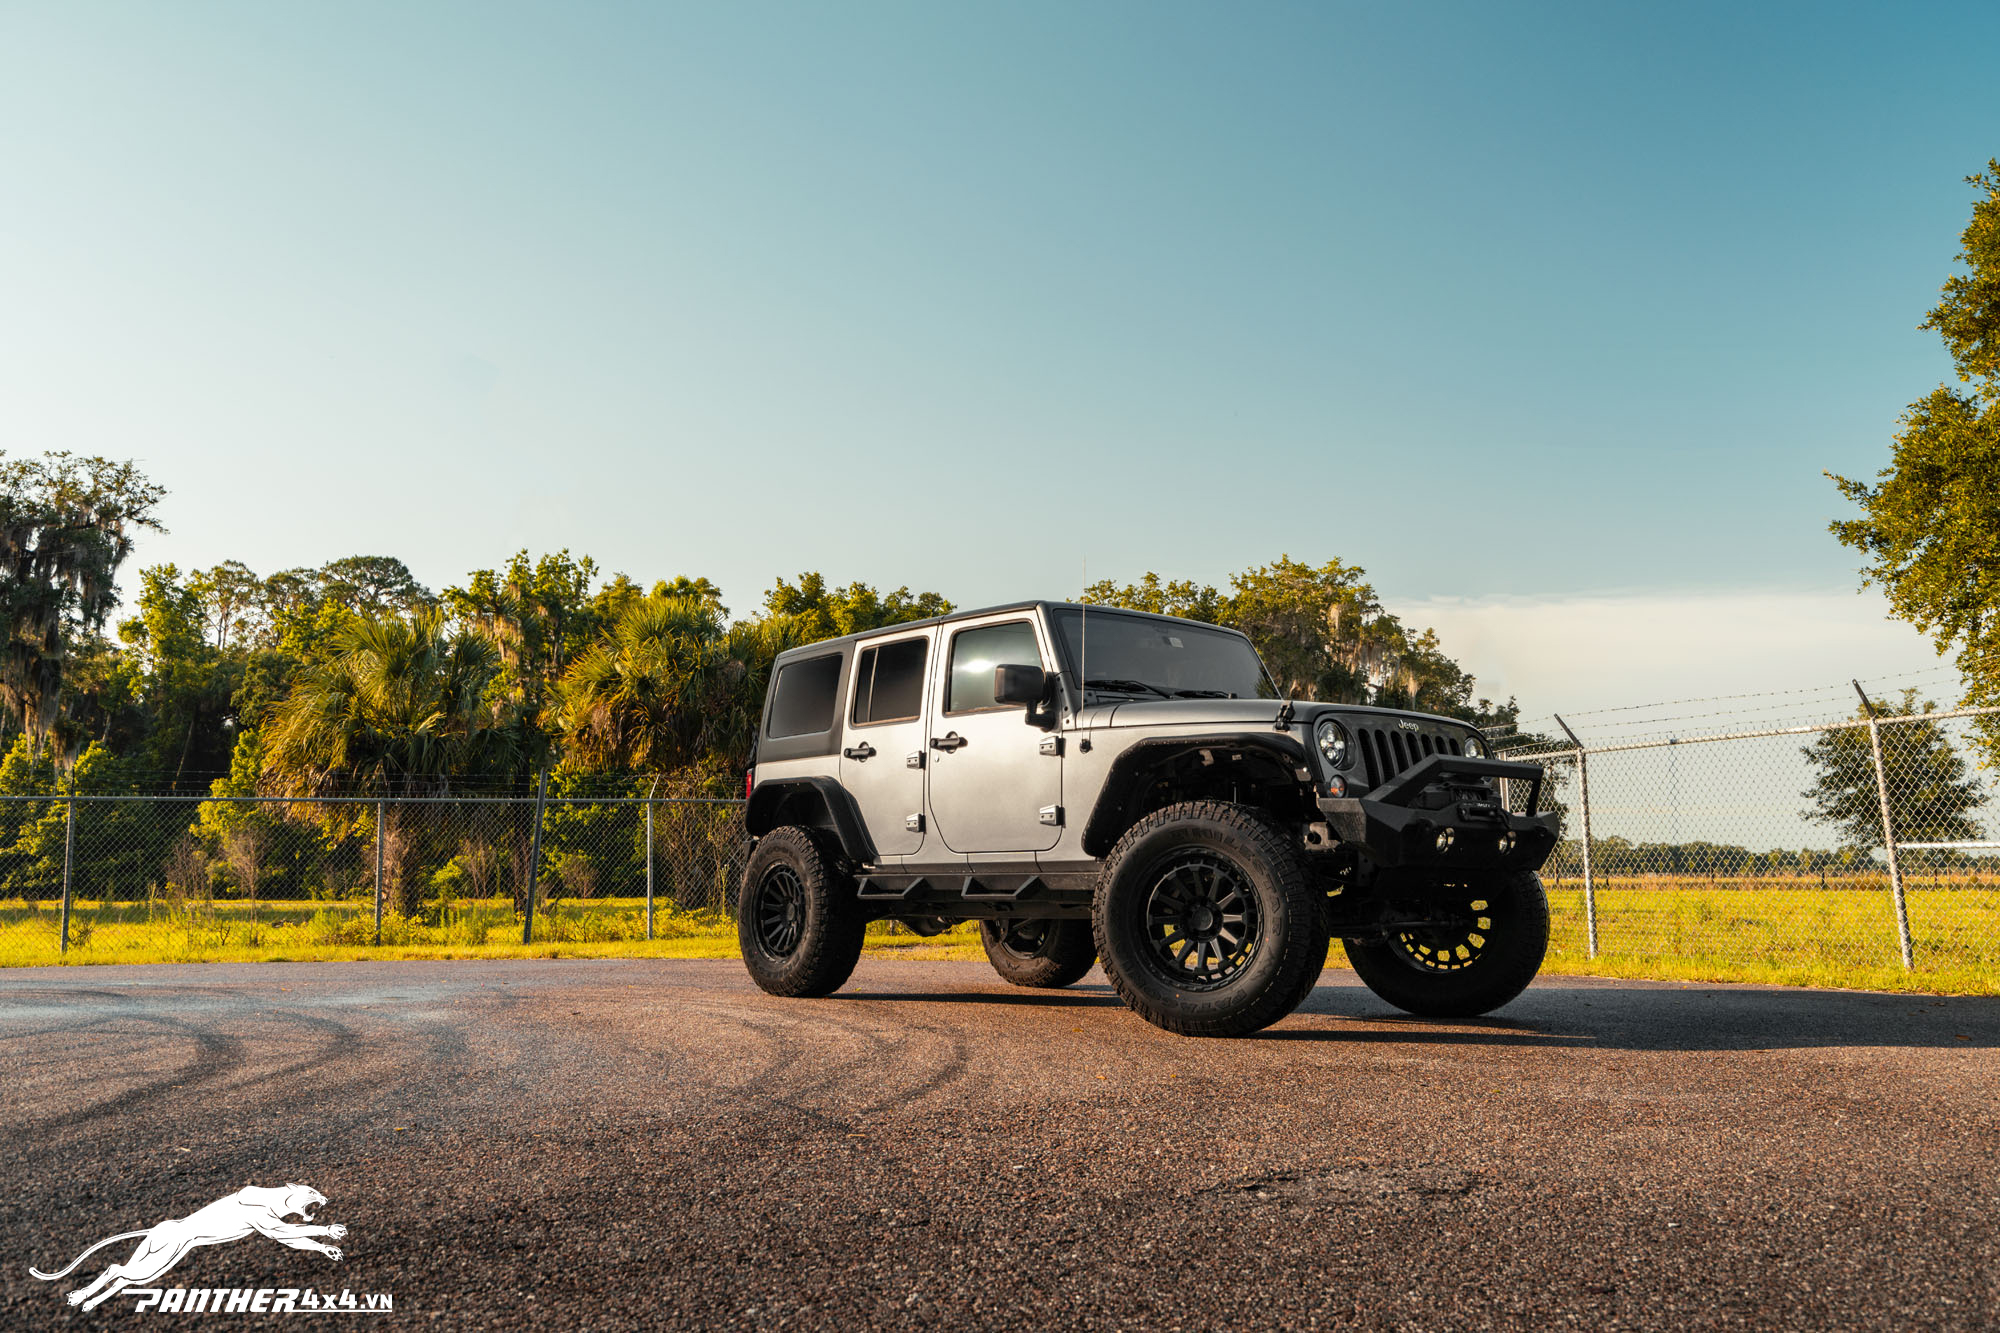 Mâm Black Rhino Raid 18 inch (màu Matte Black) cho jeep